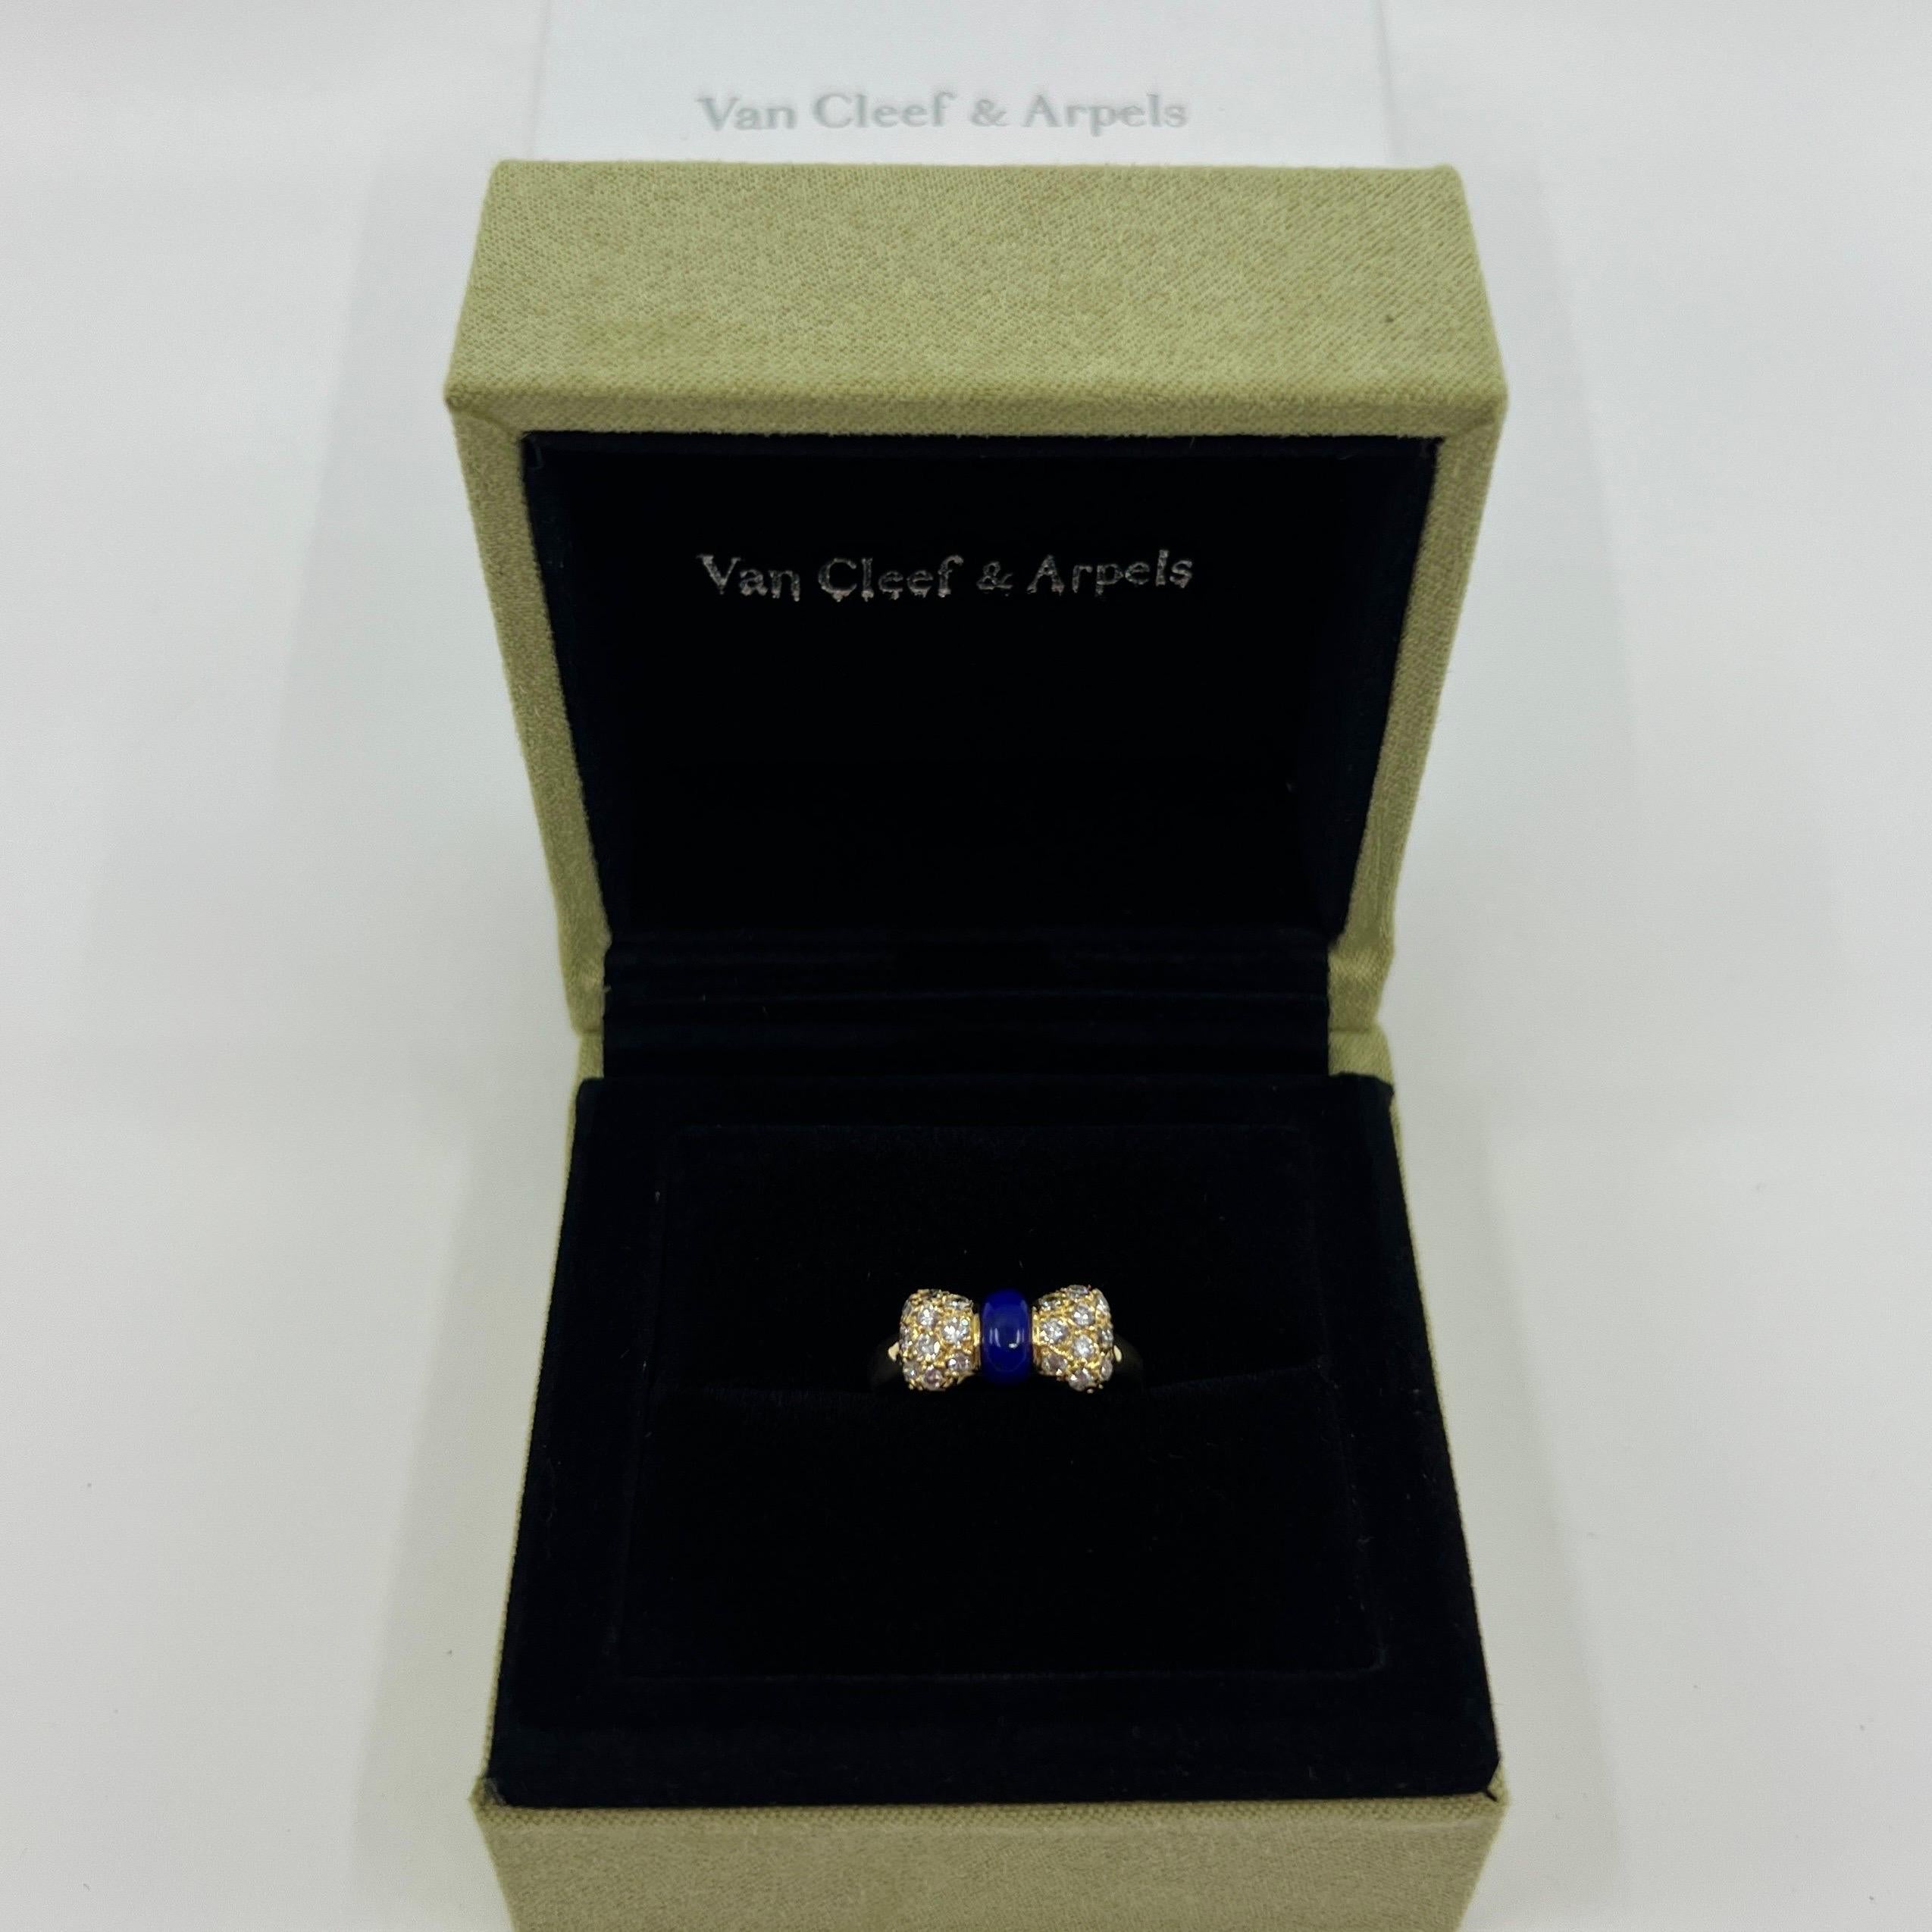 Rare Vintage Van Cleef & Arpels Lapis Lazuli and Diamond 18k Yellow Gold Ribbon Bow Ring.

Une magnifique bague au design unique typique de Van Cleef & Arpels, sertie d'un magnifique arrangement de lapis-lazuli et de diamants blancs de première